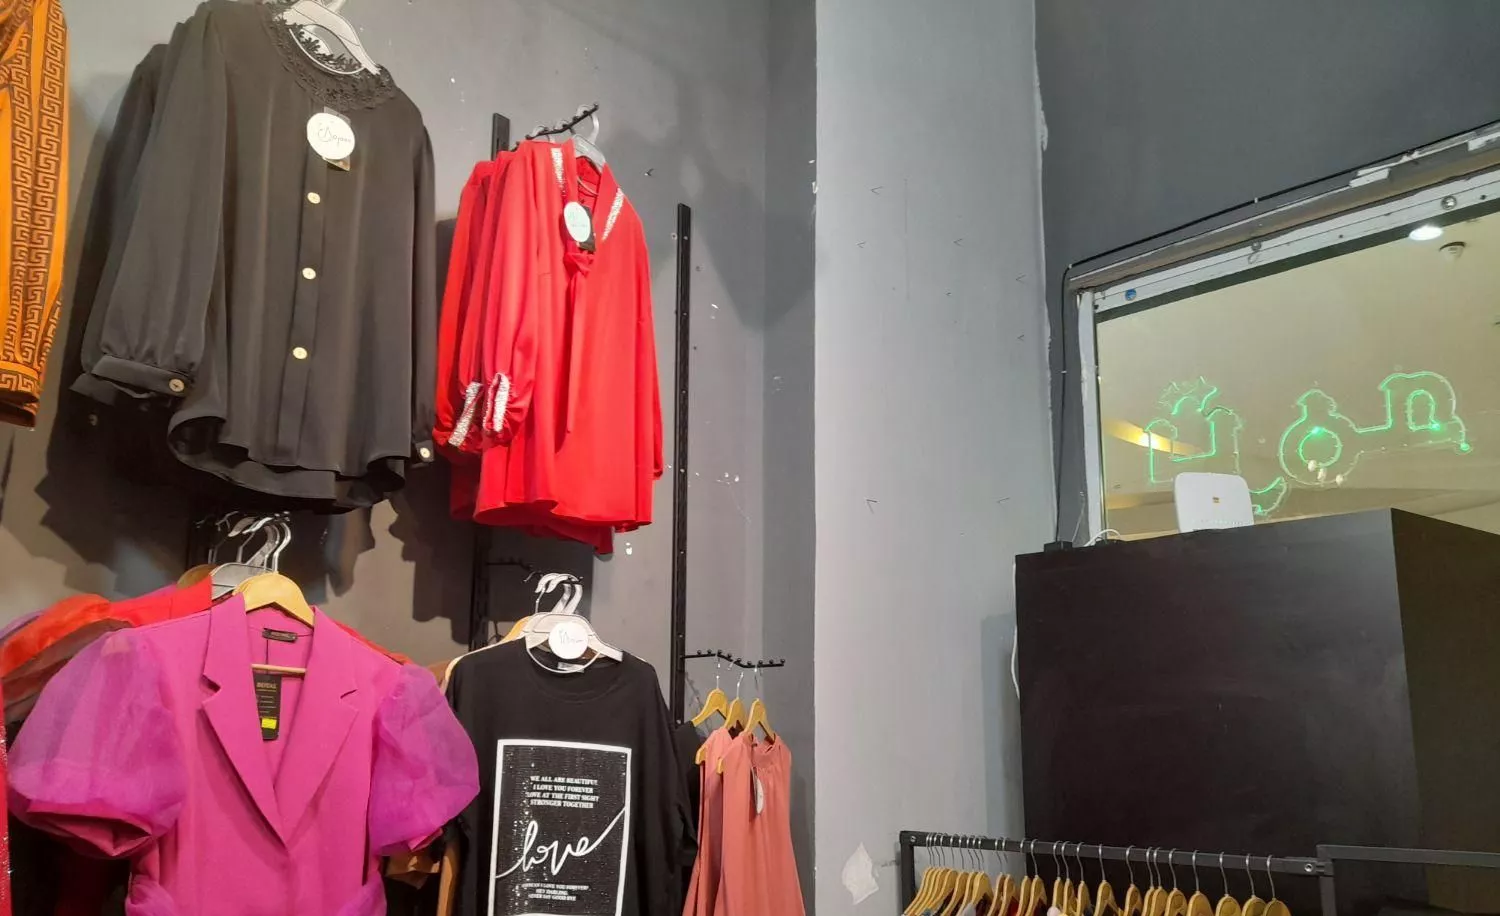 واگذاری مغازه لباس زنانه در باراما